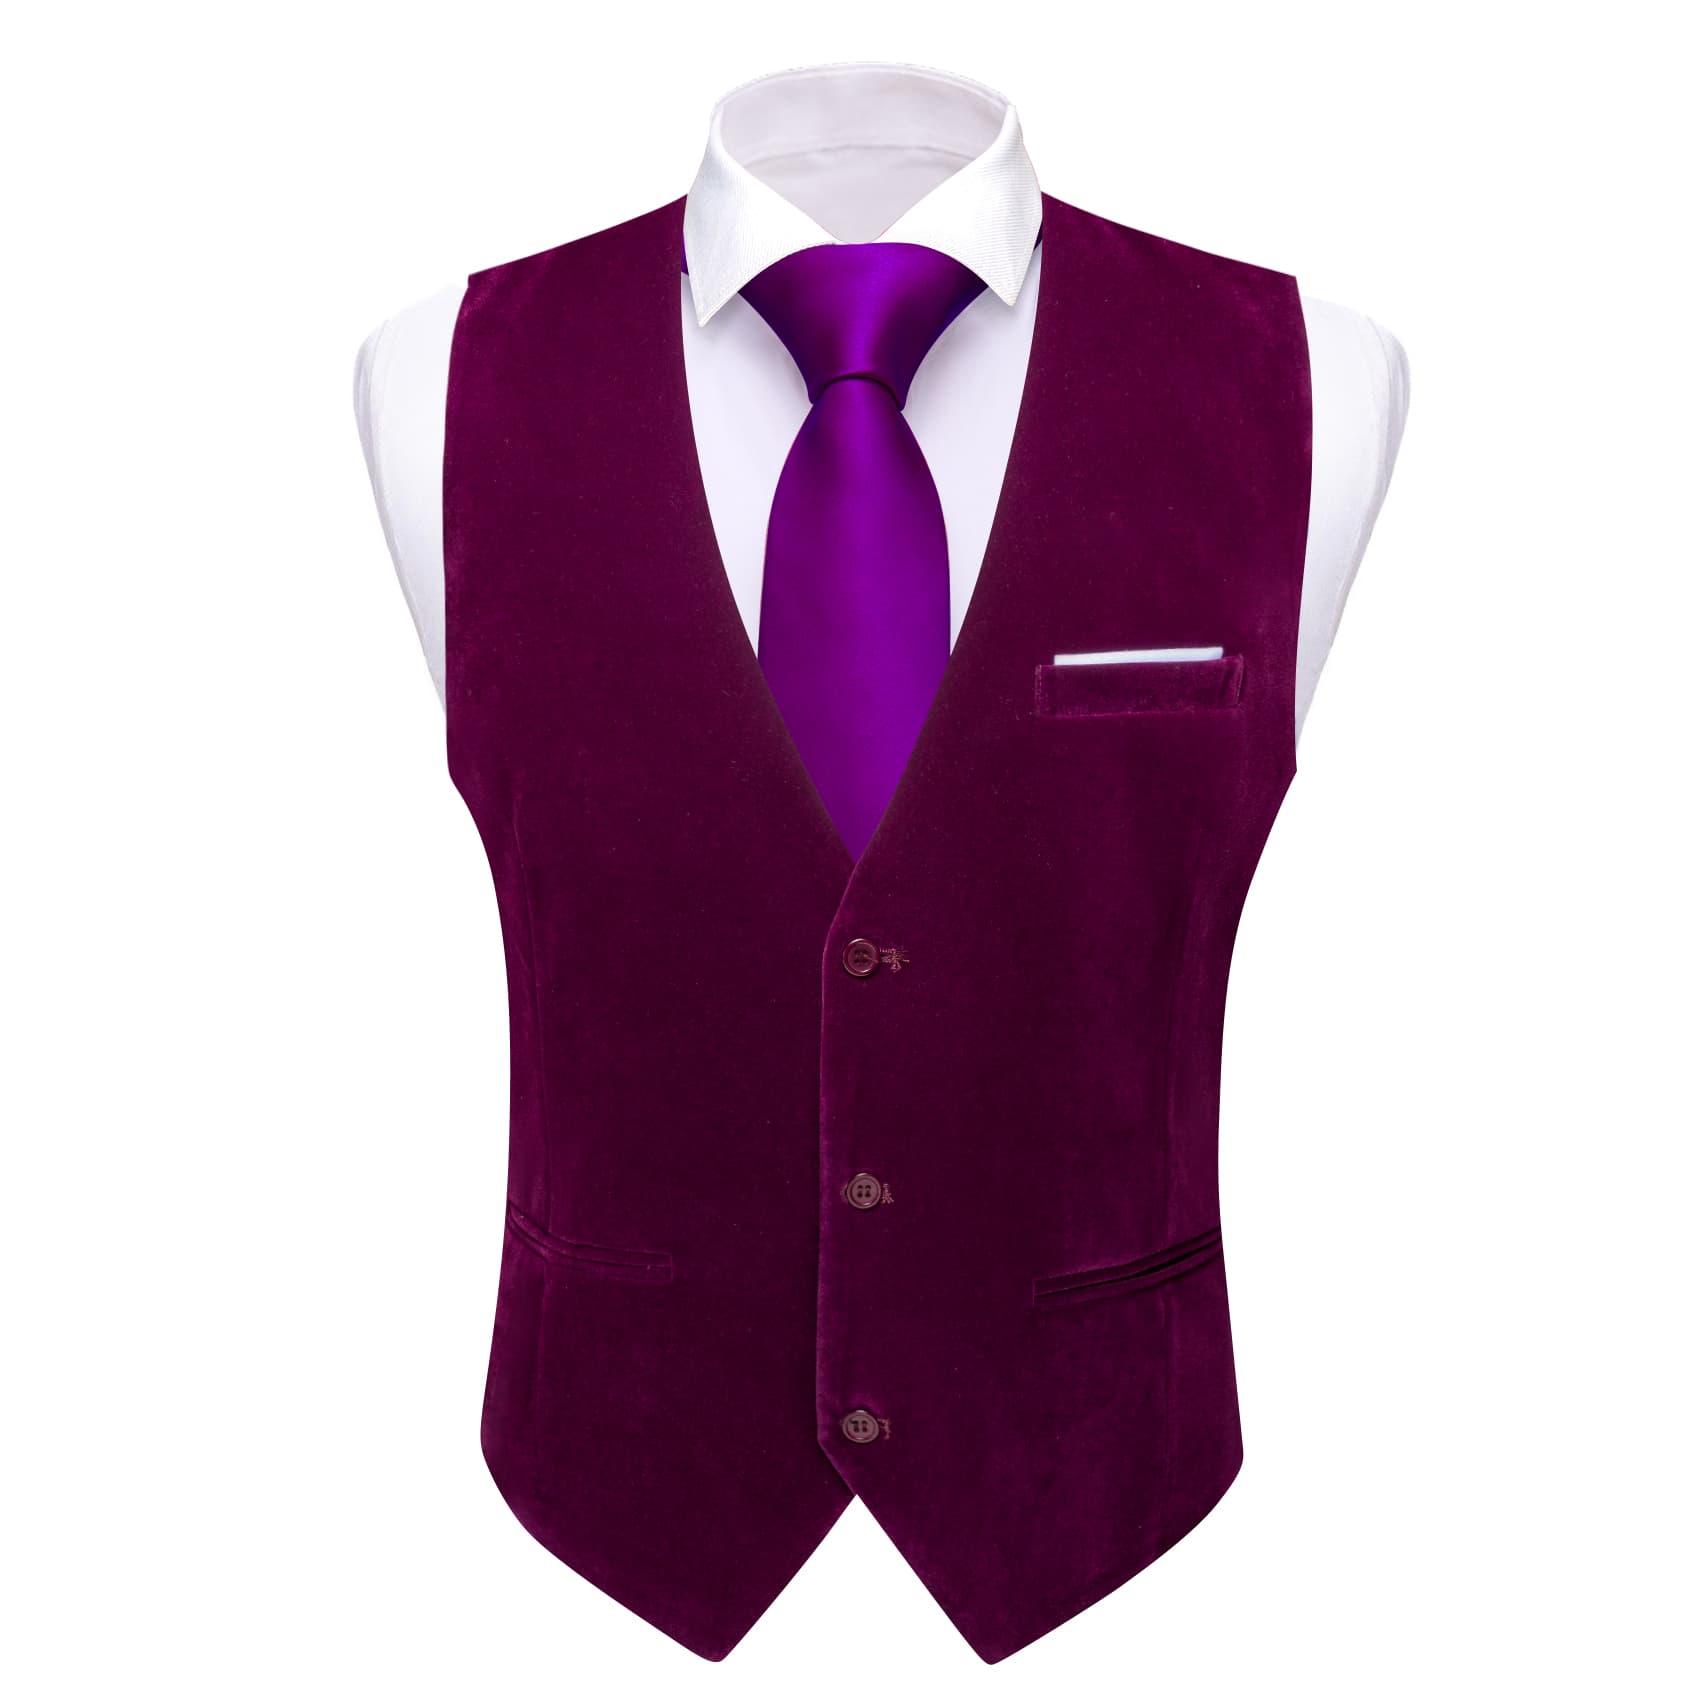 Barry Wang Waistcoat for Men Solid Wine Red Velvet Vest